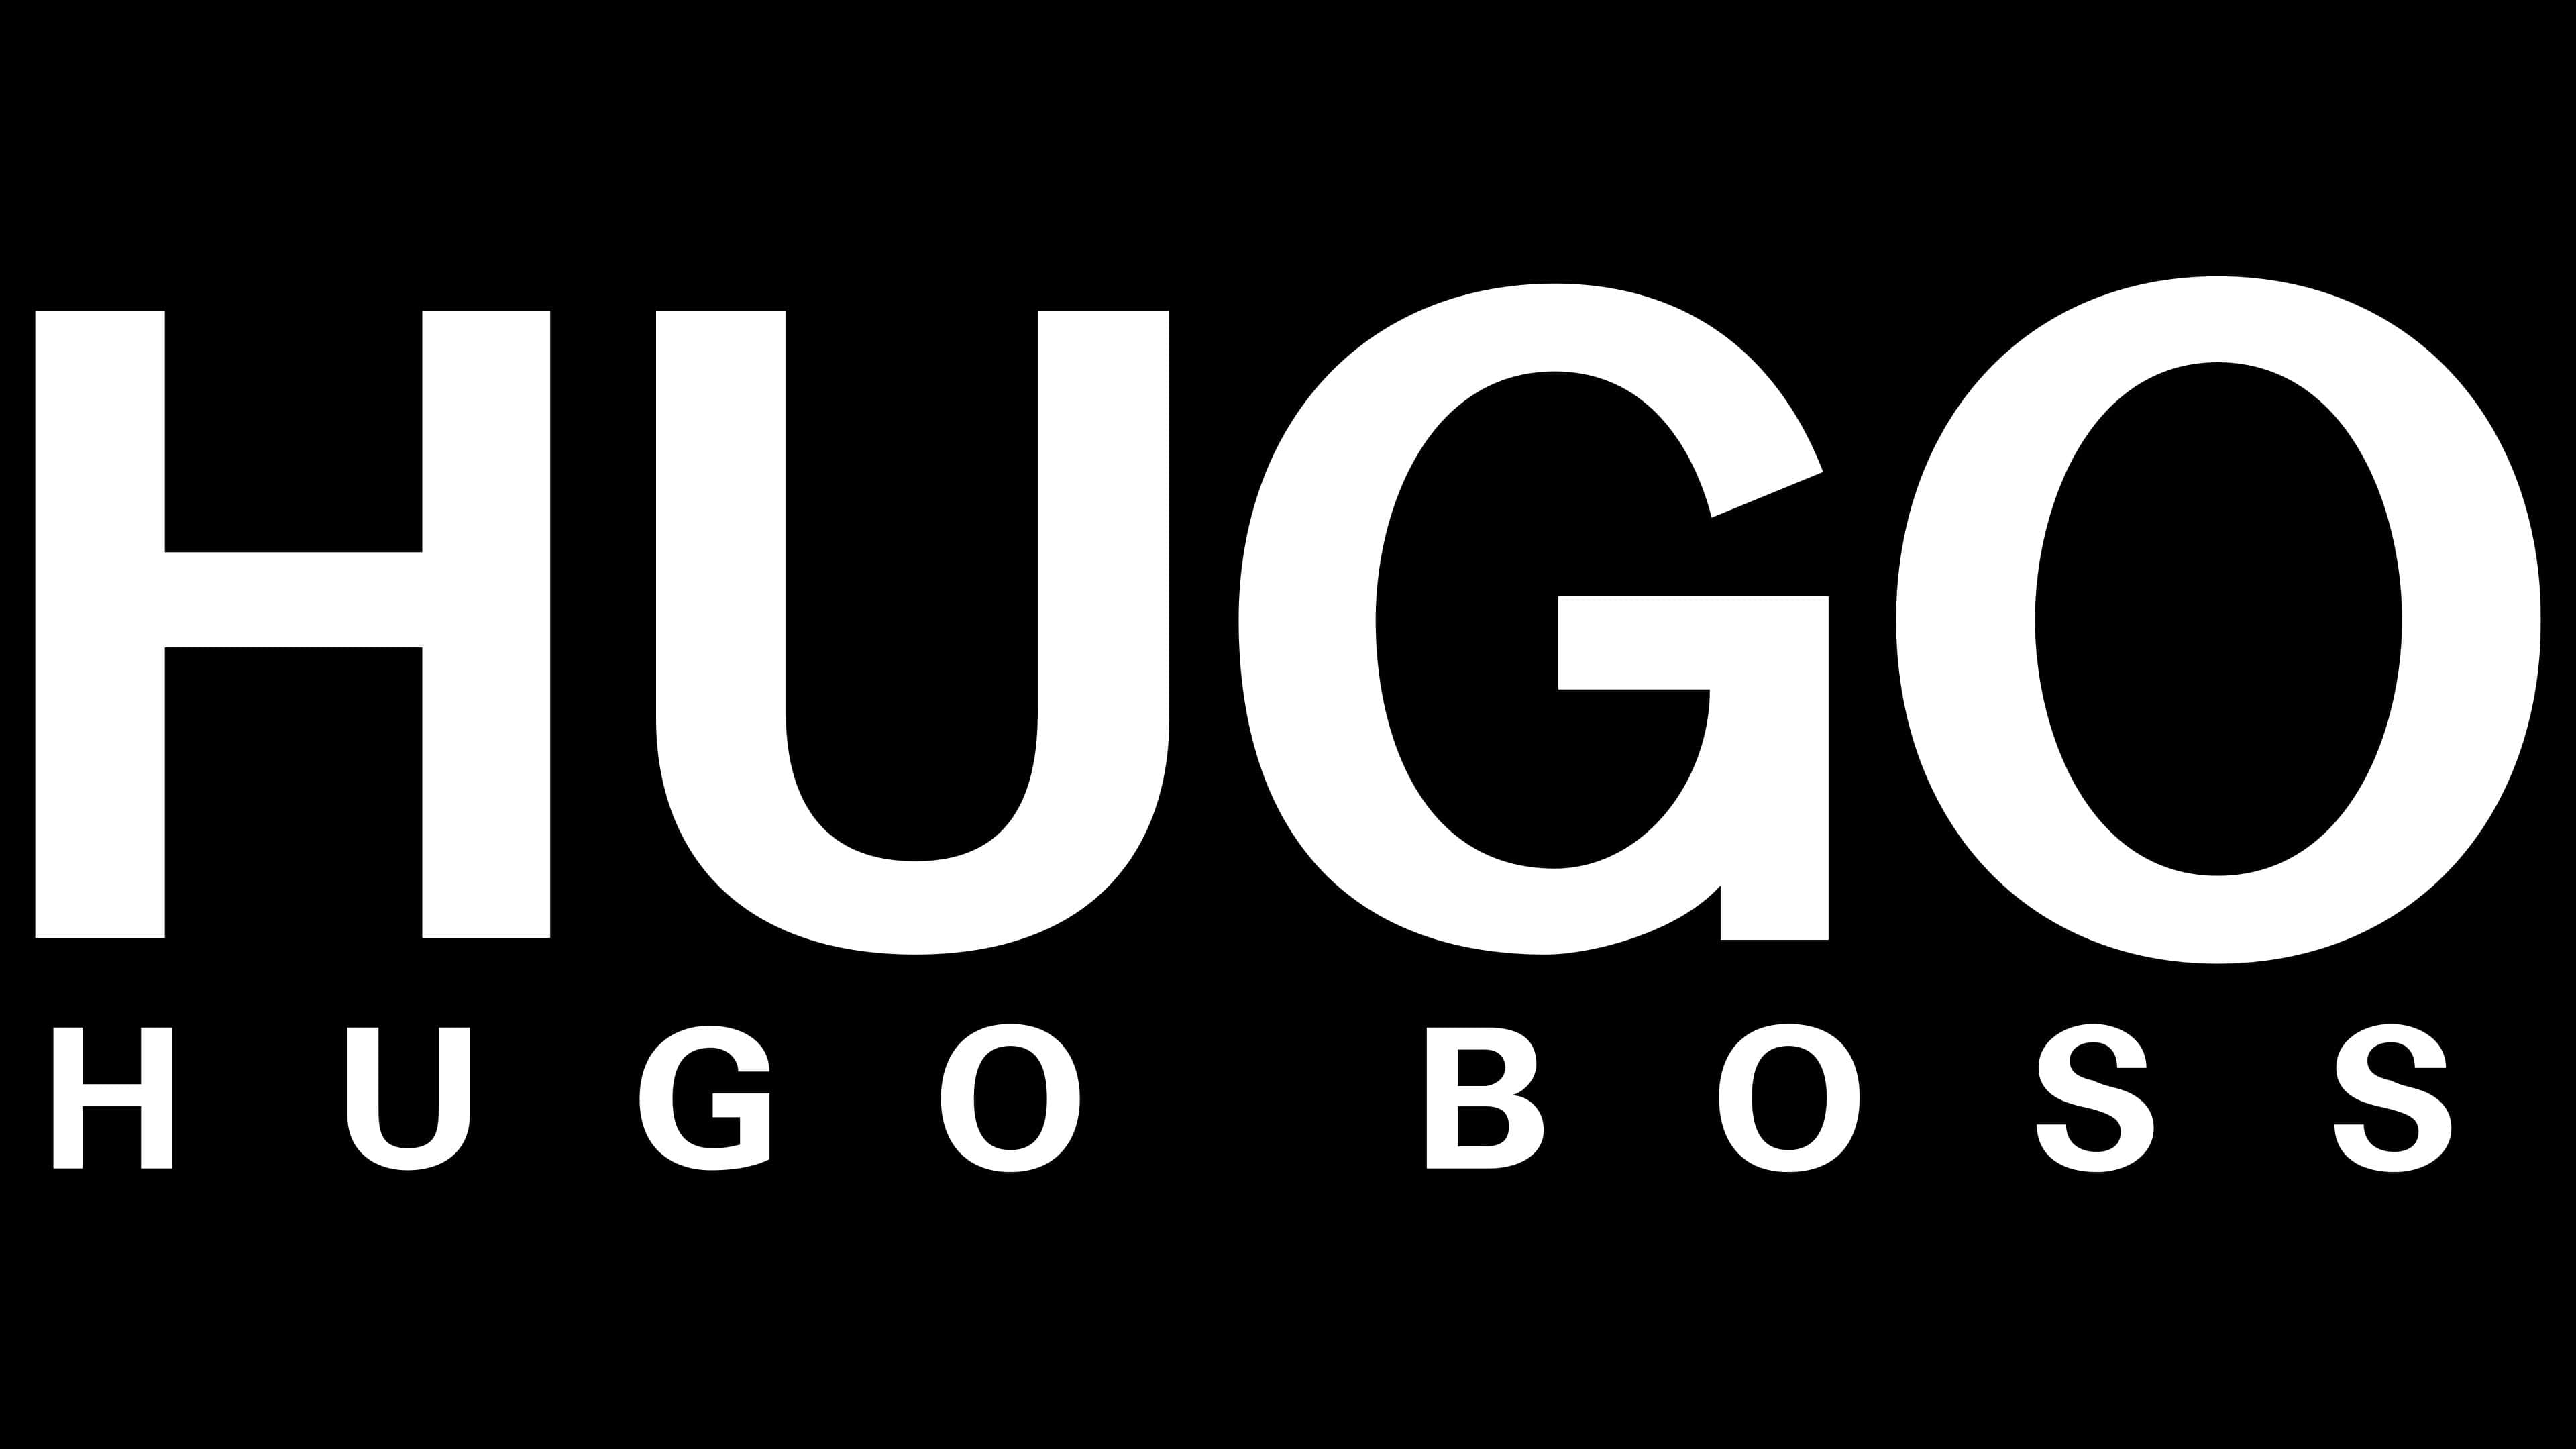 Hugo com. Фирма Хуго босс. Хьюго босс logo. Значок Hugo Boss. Хуго босс надпись.